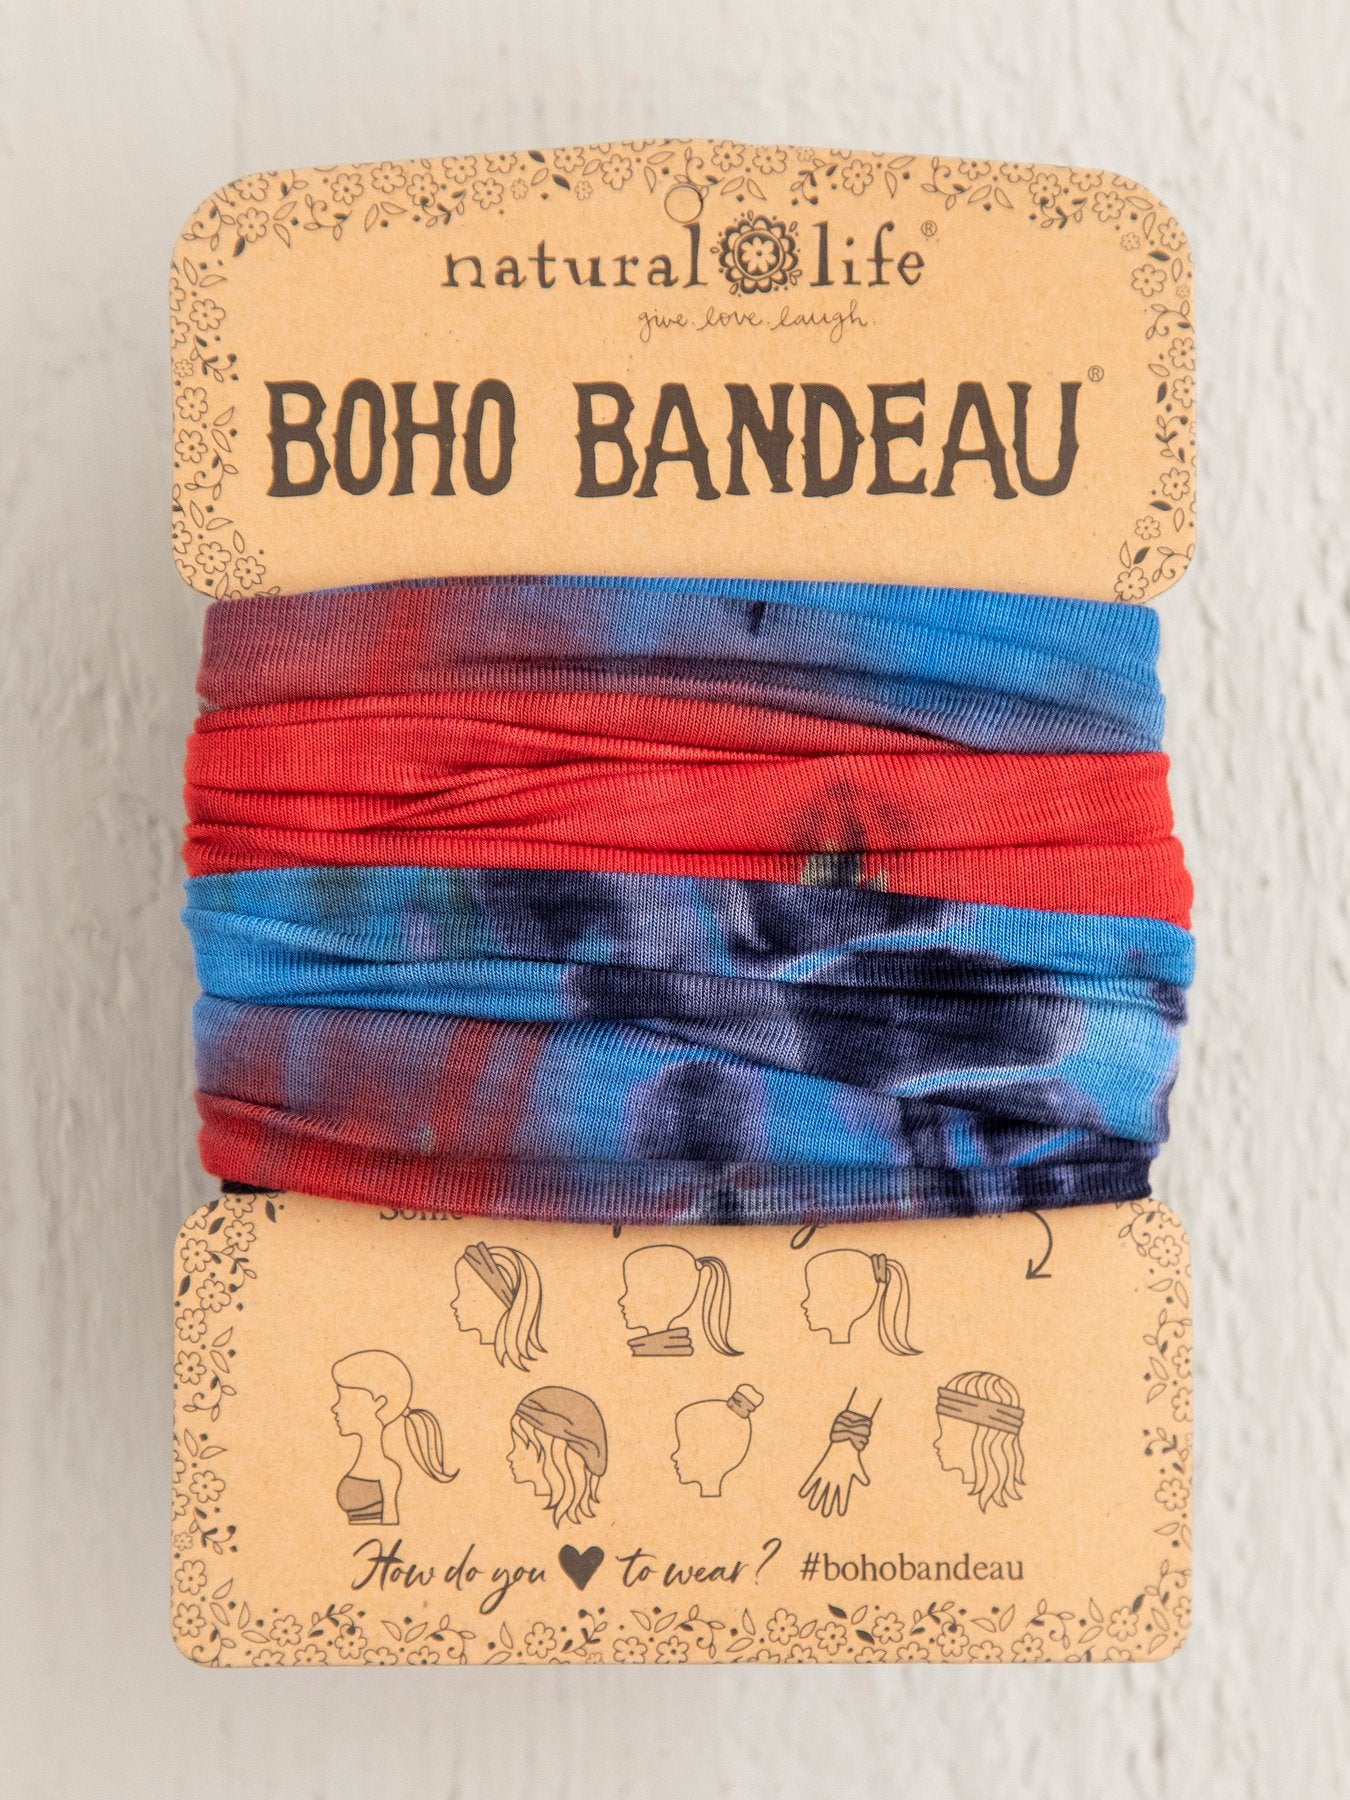 Natural Life Boho Bandeau - Red, Blue & Olive Tie-Dye